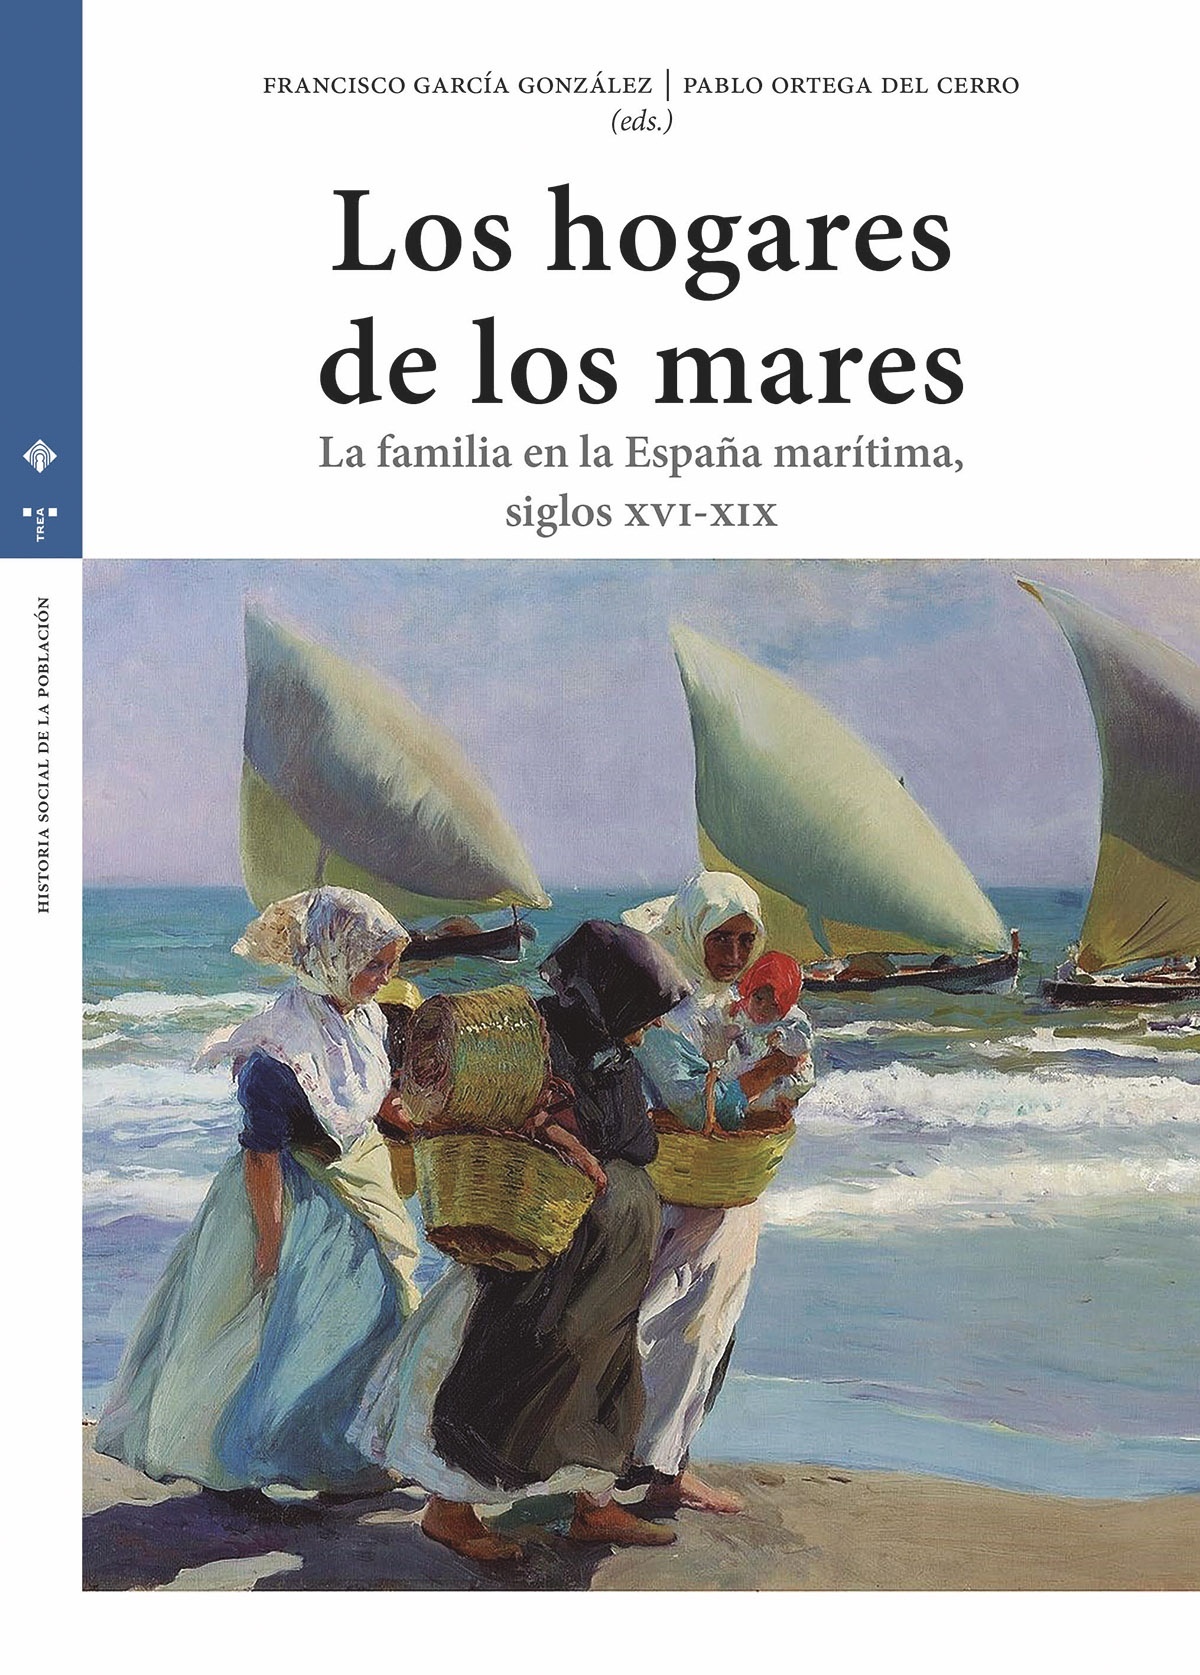 Los hogares de los mares "La familia en la España marítima (siglos XVI-XIX)"